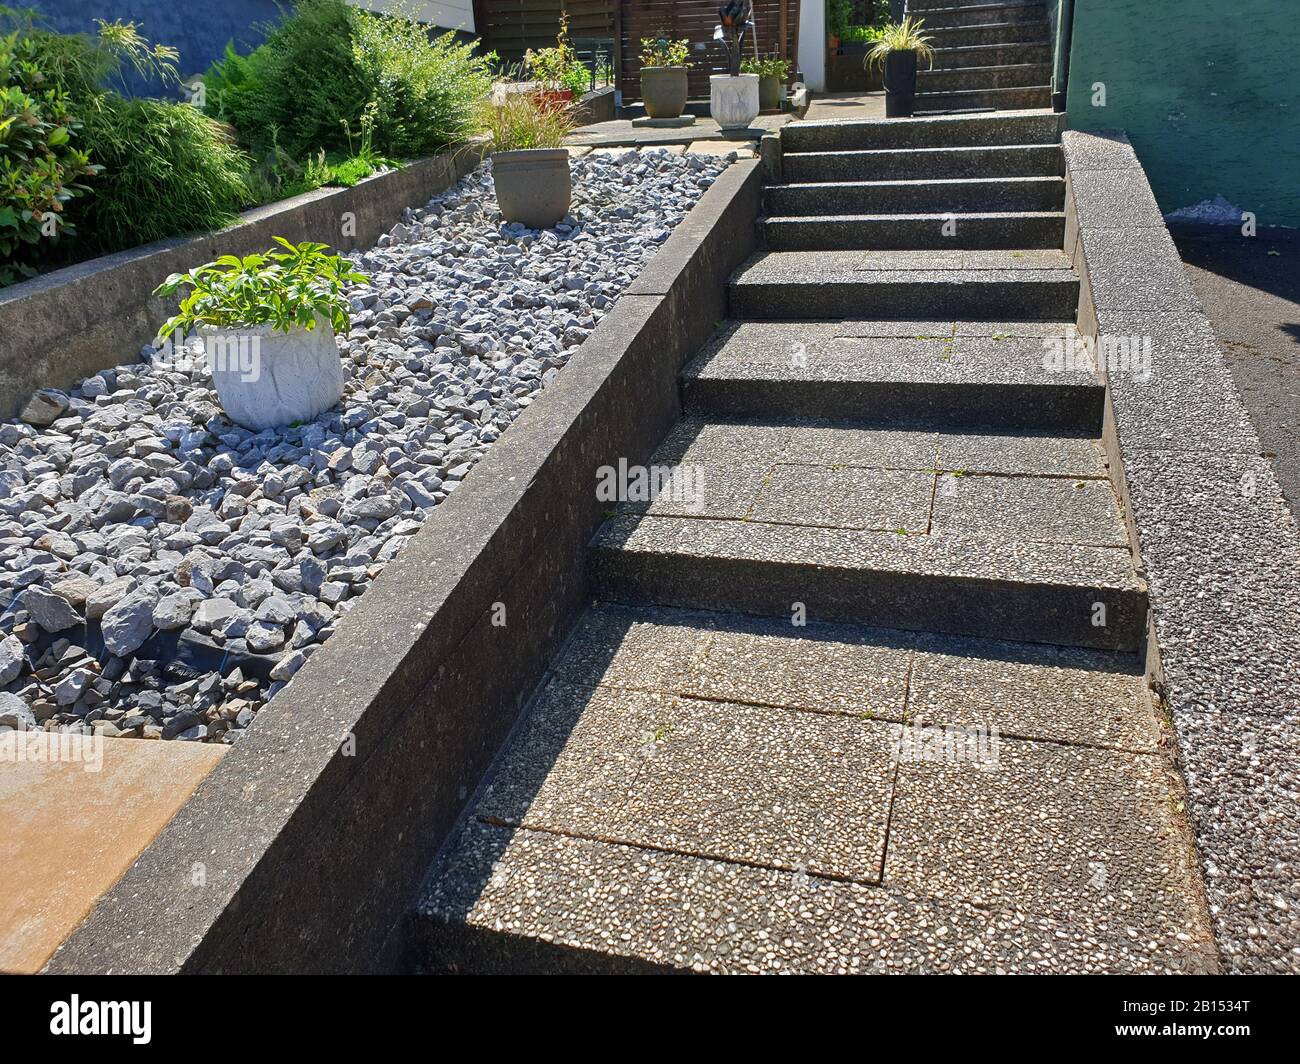 Giardino di roccia sterile con vasi di fiori accanto a una scala di cemento lavato, Germania Foto Stock